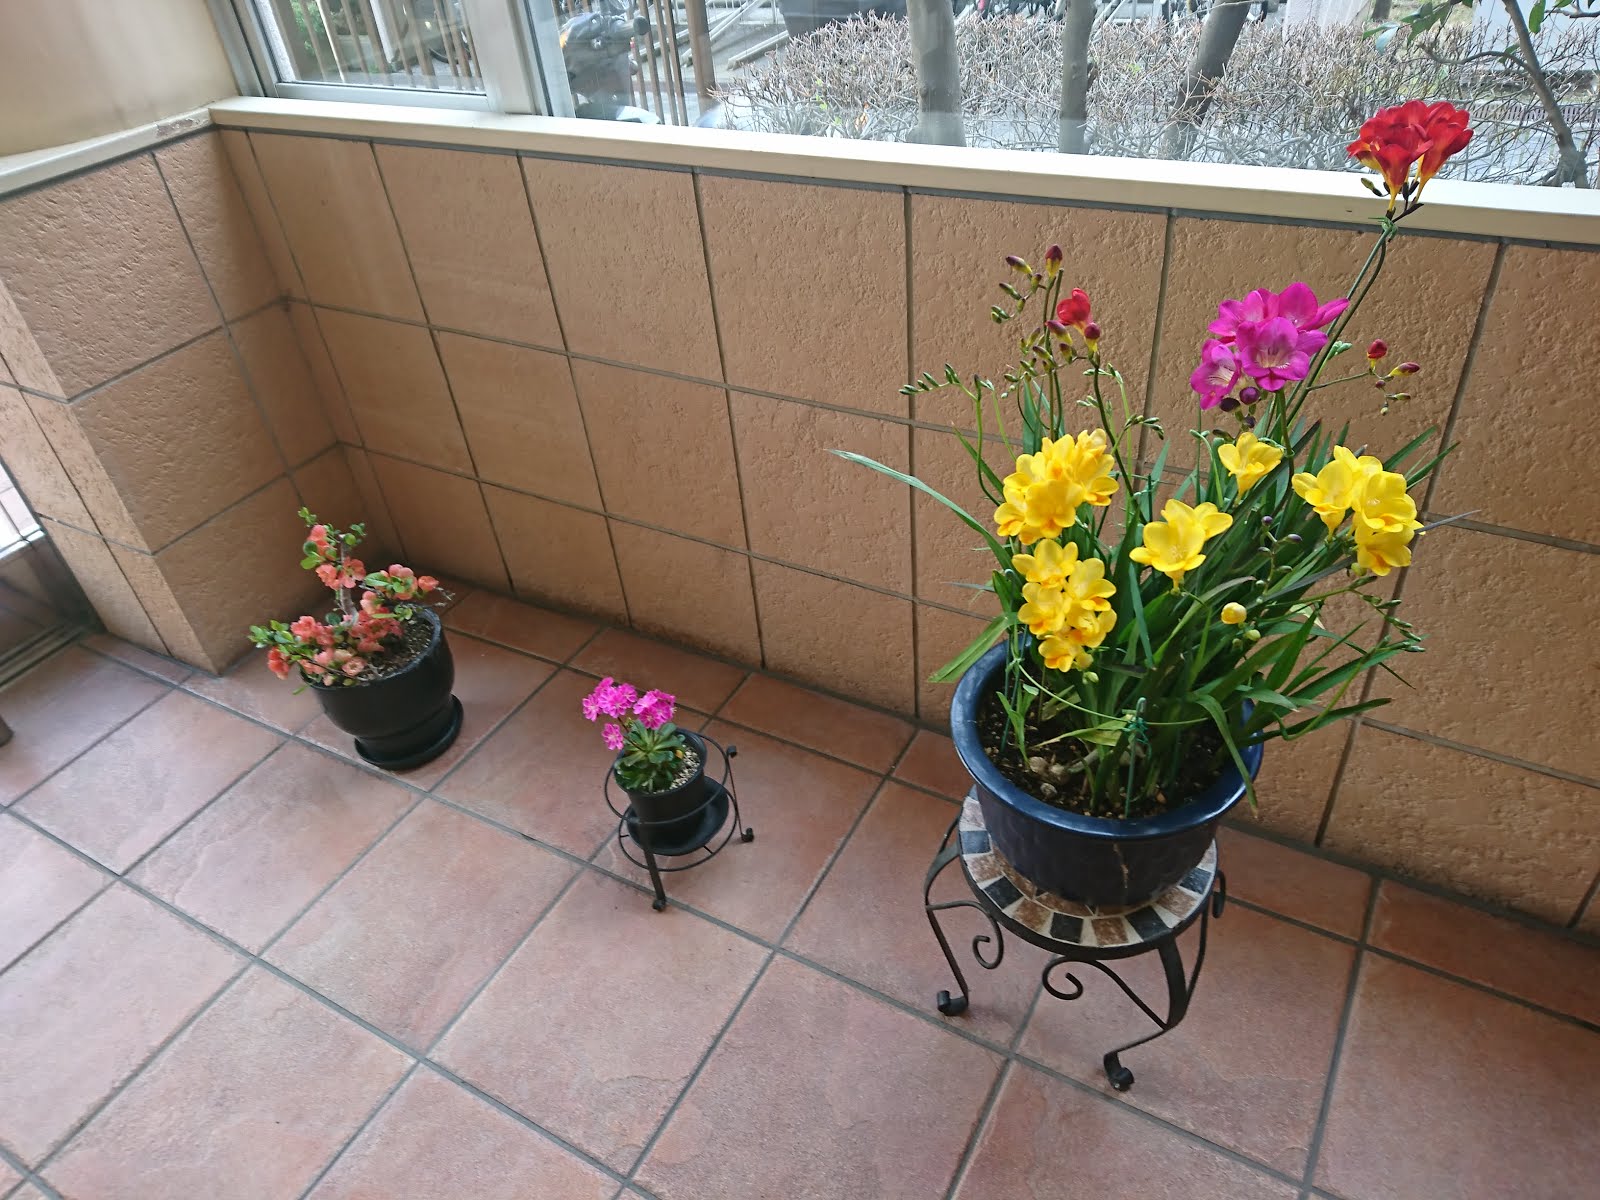 八木東一のブログ 3 26 朝9 50 マンションに着いた 玄関には春を彩る花が咲く鉢が３つ置いてあった